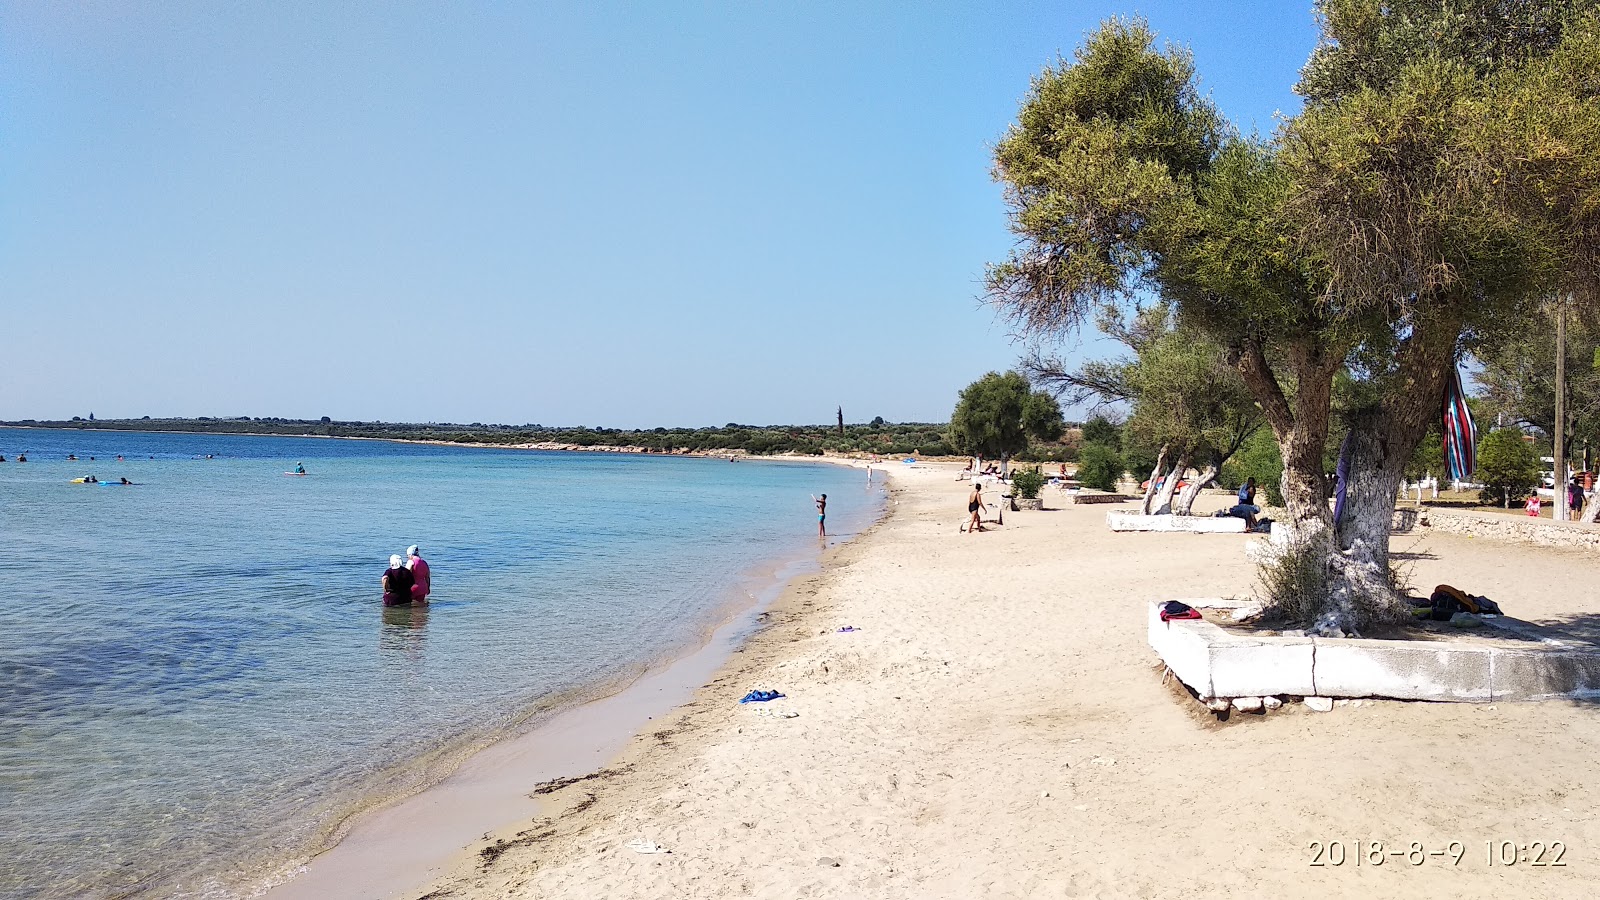 Fevzi Cakmak beach'in fotoğrafı kahverengi kum yüzey ile